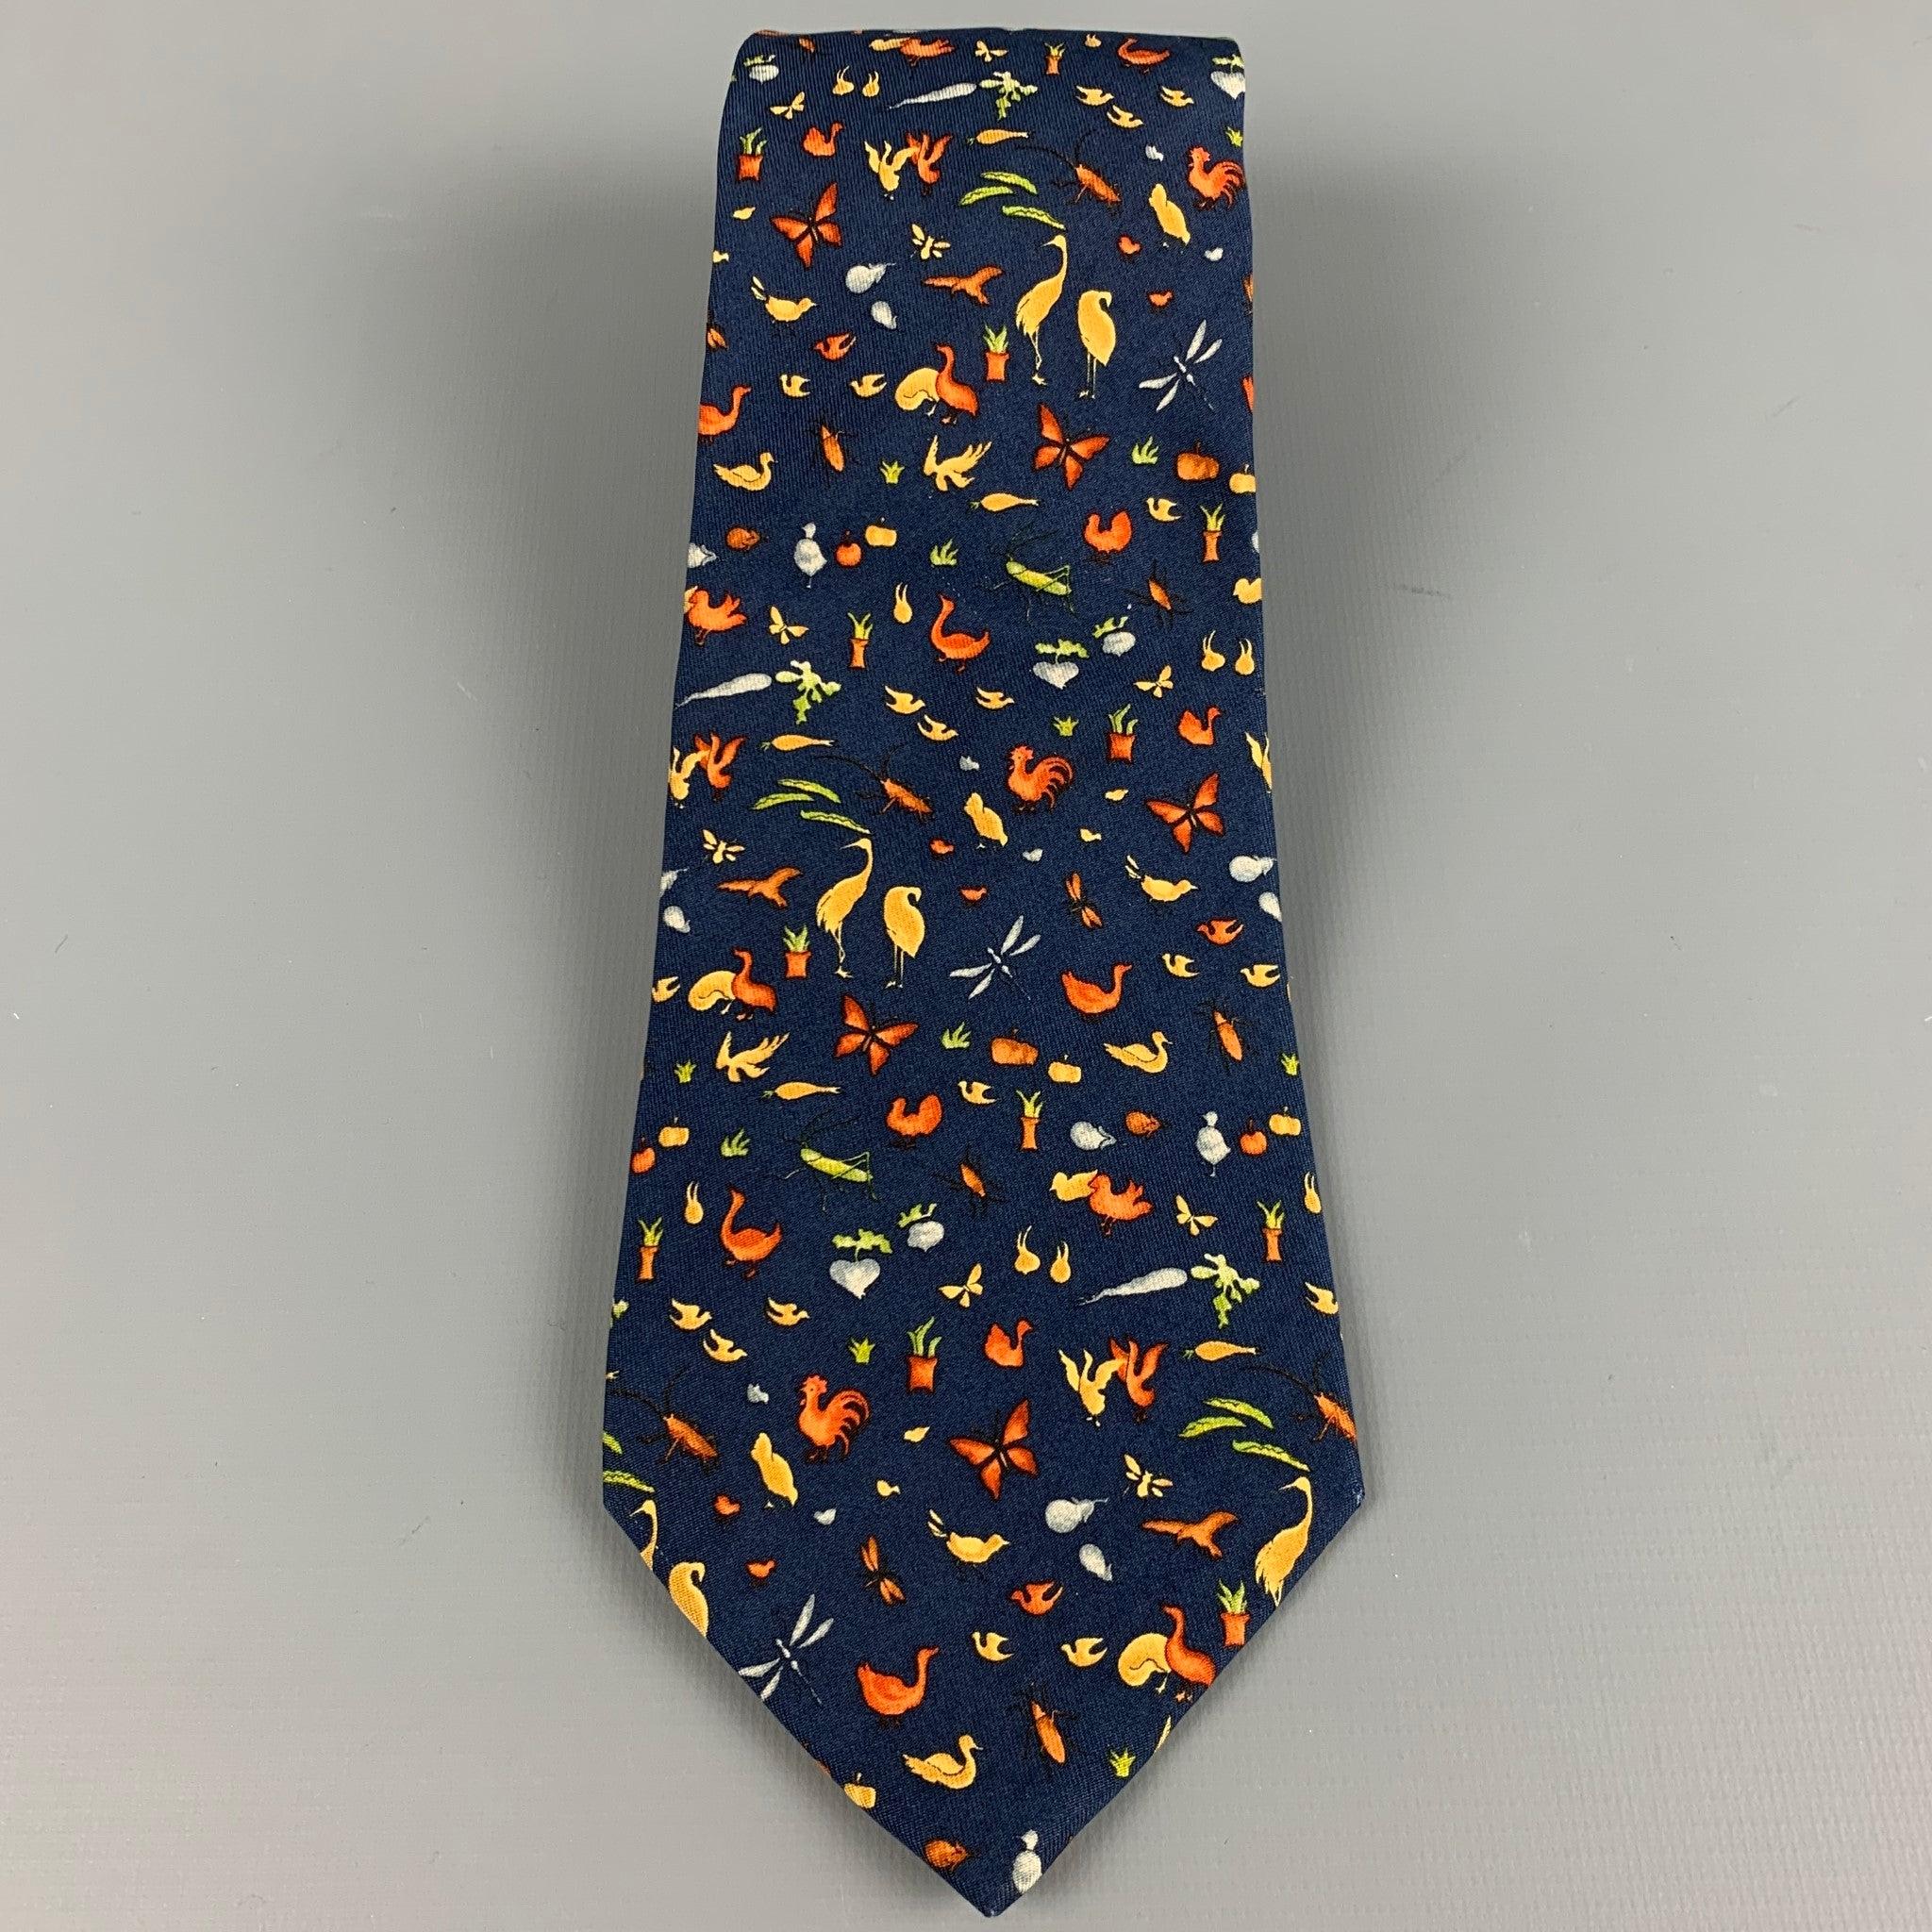 SALVATORE FERRAGAMO
Krawatte aus marineblauer Seide mit orangefarbenem Bauernhoftier-Muster. Made in Italy Ausgezeichneter Pre-Owned Zustand. 

Abmessungen: 
  Breite: 3 Zoll Länge: 58 Zoll 
  
  
 
Referenz: 127304
Kategorie: Krawatte
Mehr Details
